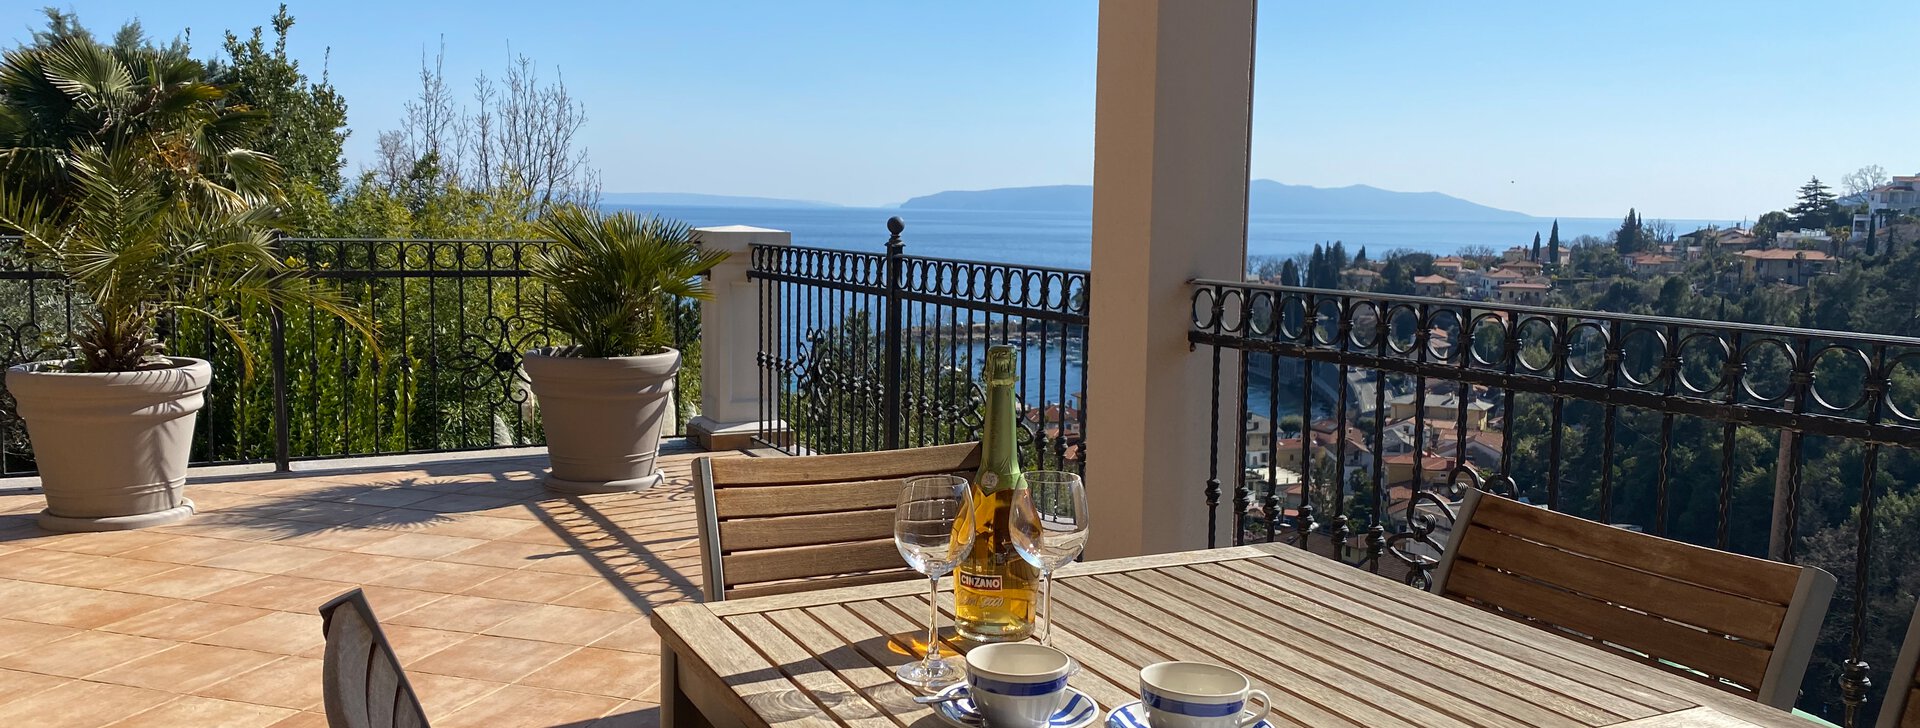 Terrasse mit Ausblick, Traumhafte und großzügige Wohnung mit Blick aufs Meer in Kroatien, Immobilie kaufen, Ičići-Kroatien | © HausBauHaus GmbH